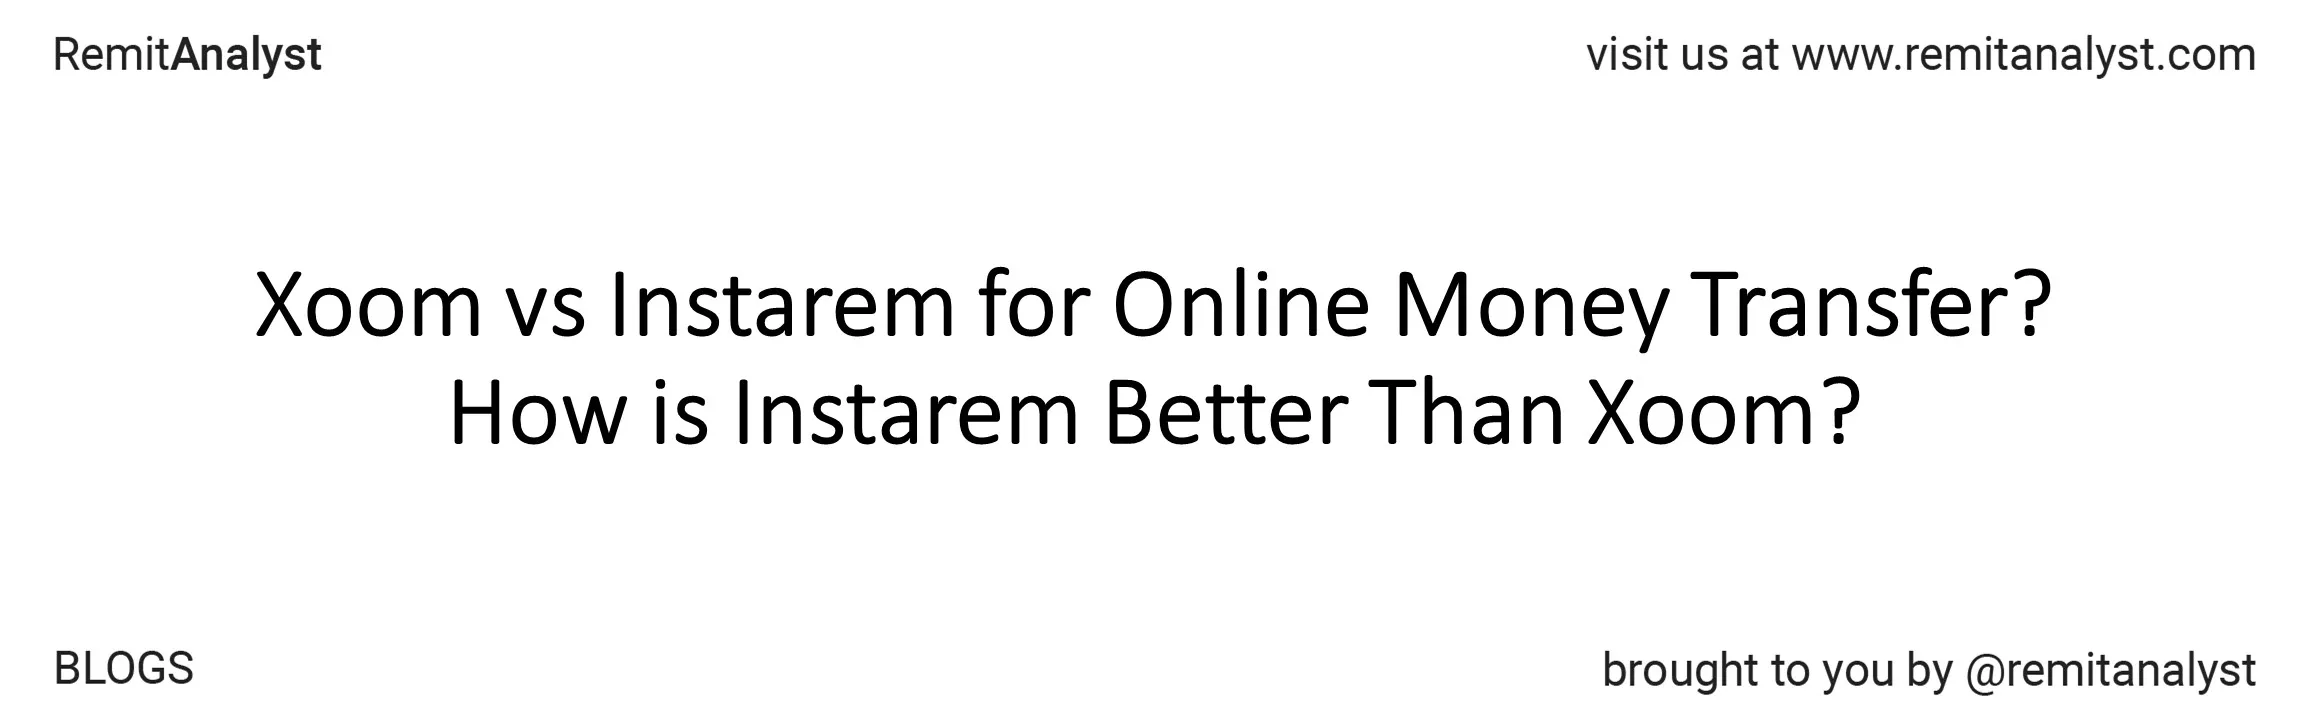 xoom-vs-instarem-for-online-money-transfer-title